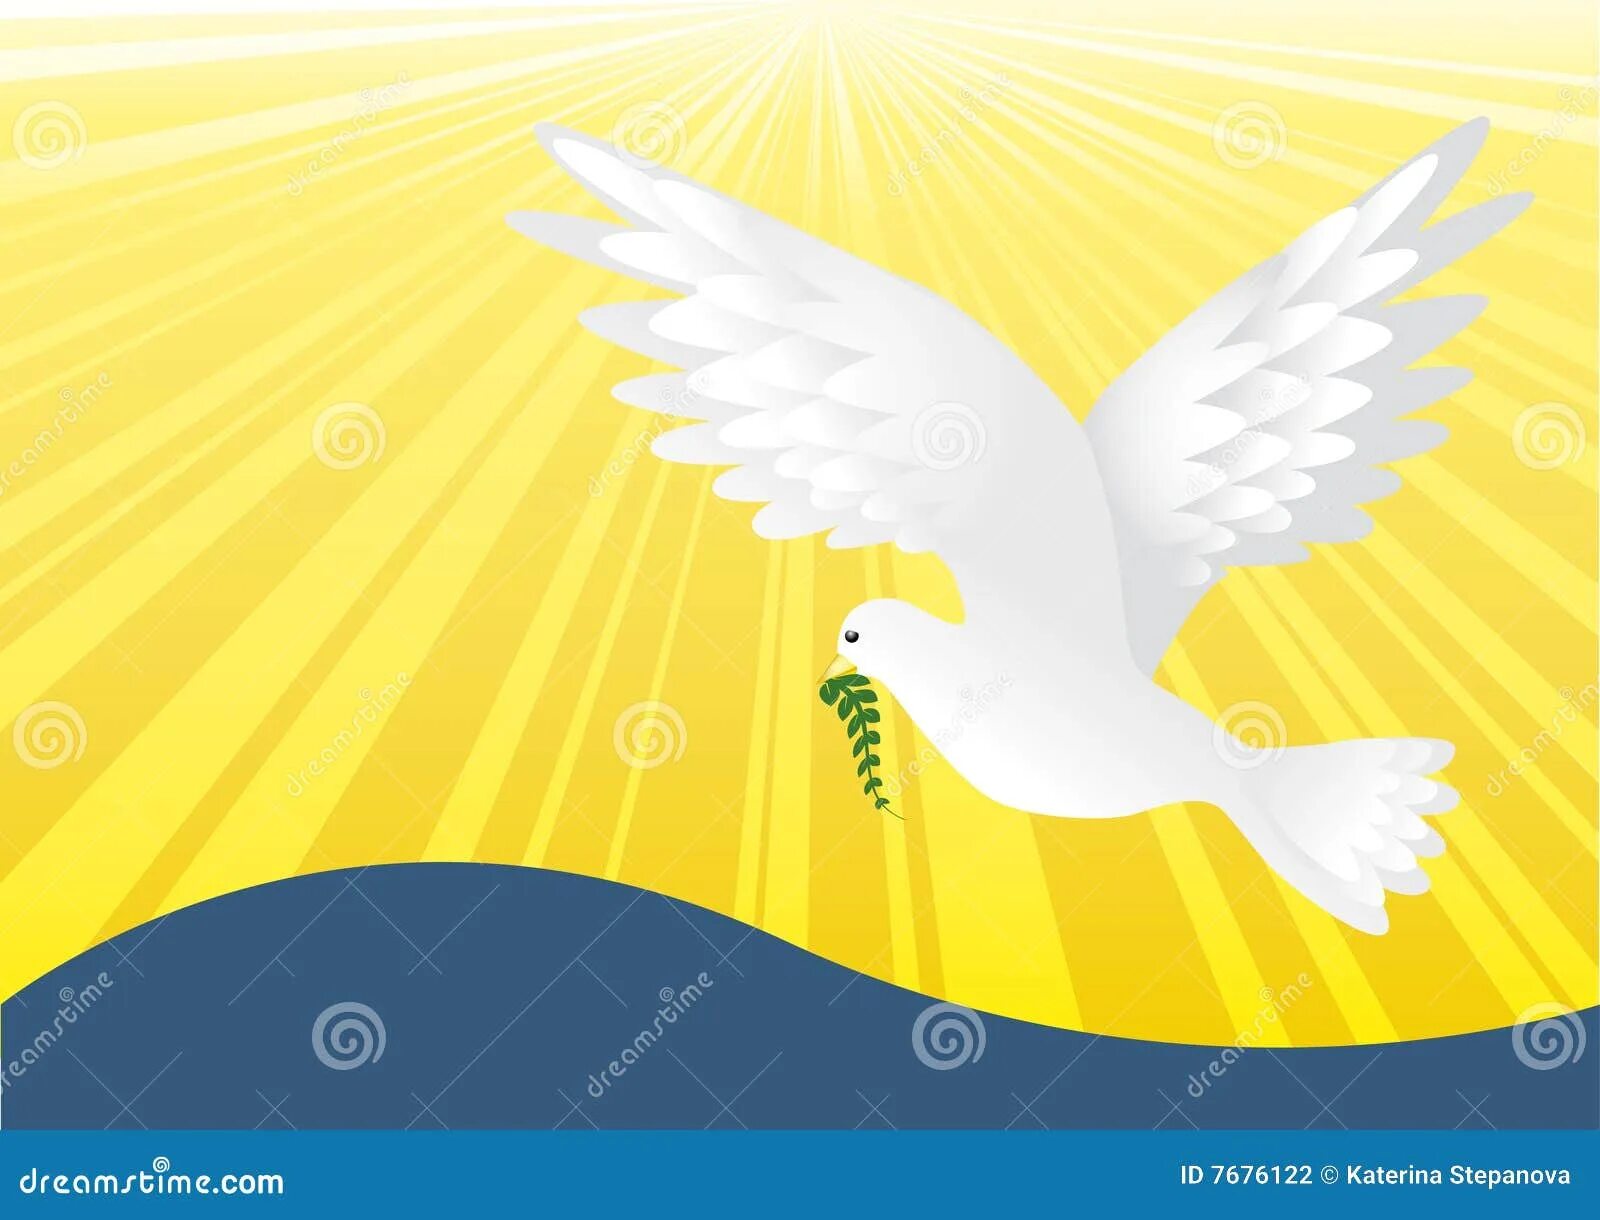 Белый голубь в лучах солнца. Разноцветный голубь на желтом фоне держит веточку.